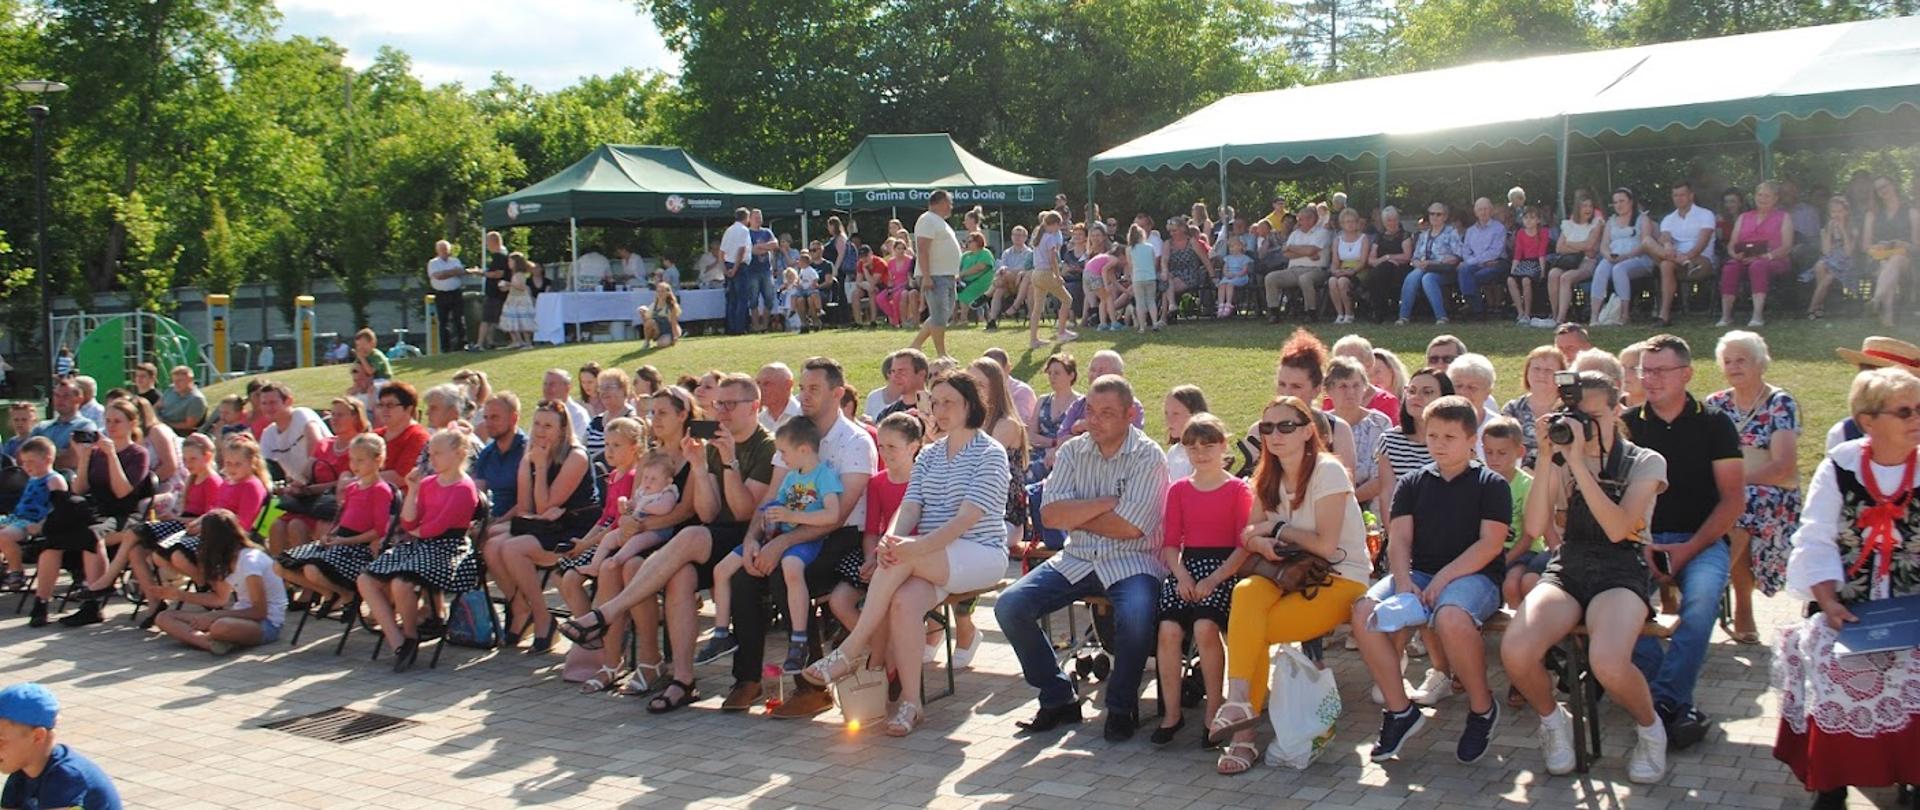 Zdjęcie przedstawia masę ludzi siedzących i stojących, oglądających występy artystyczne, pogoda jest słoneczna 